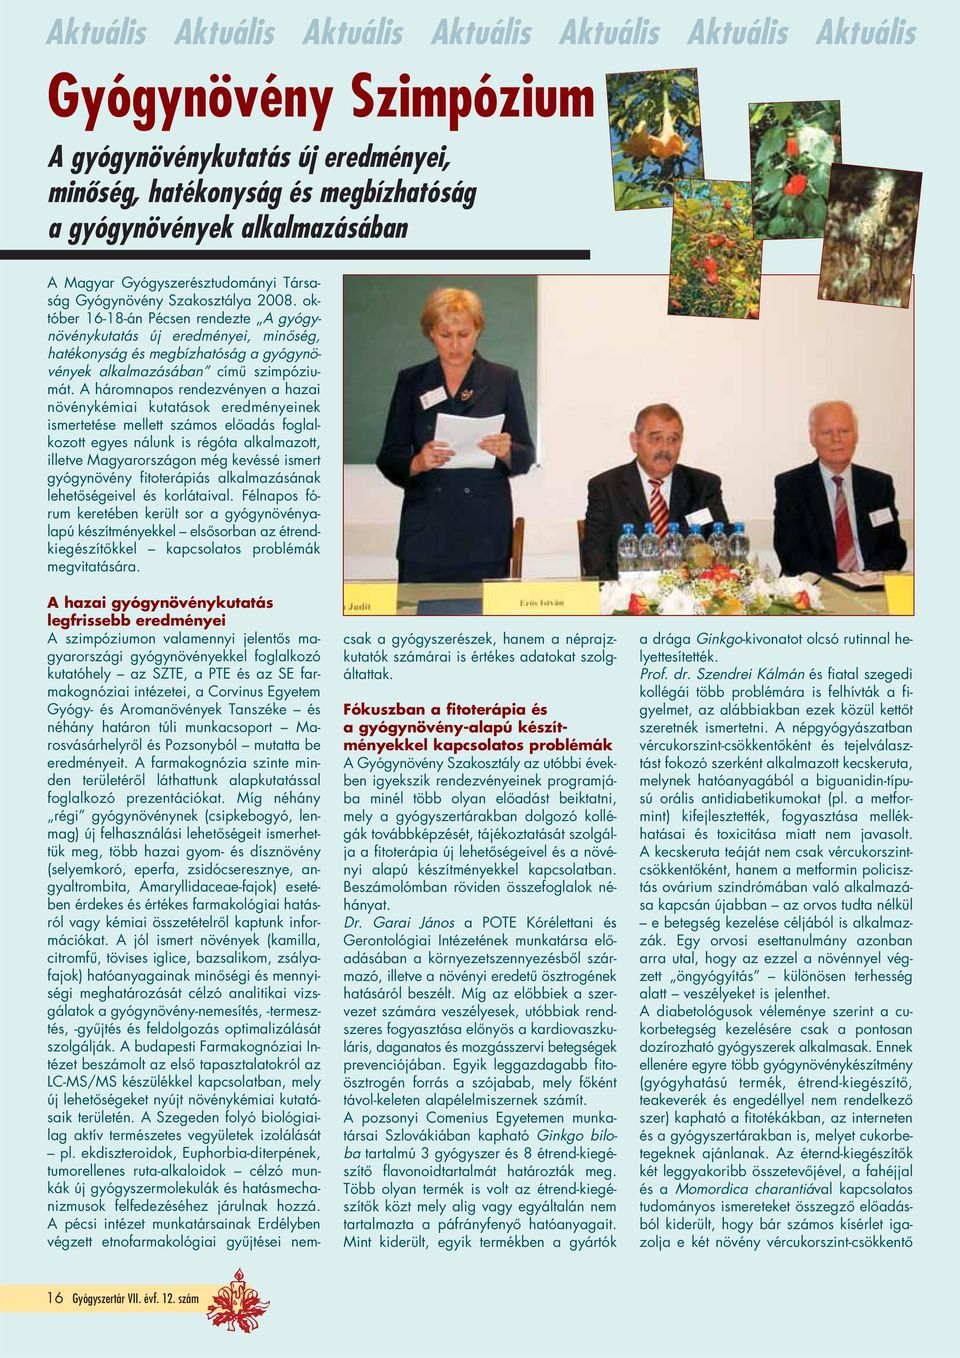 ok - tóber 16-18-án Pécsen rendezte A gyógynövénykutatás új eredményei, minôség, hatékonyság és megbízhatóság a gyógynövények alkalmazásában címû szimpóziu - mát.